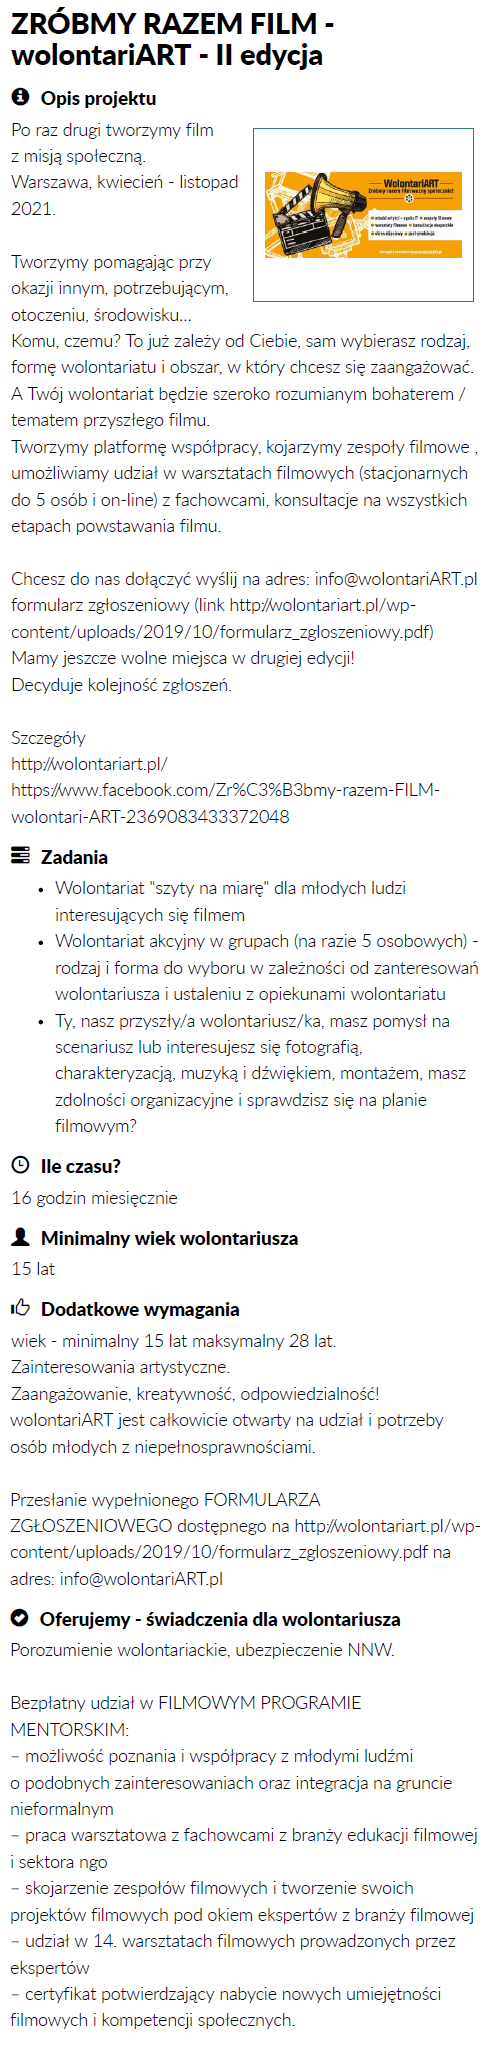 zrzut ekranu oferty ZRÓBMY RAZEM FILM - wolontariART - II edycja